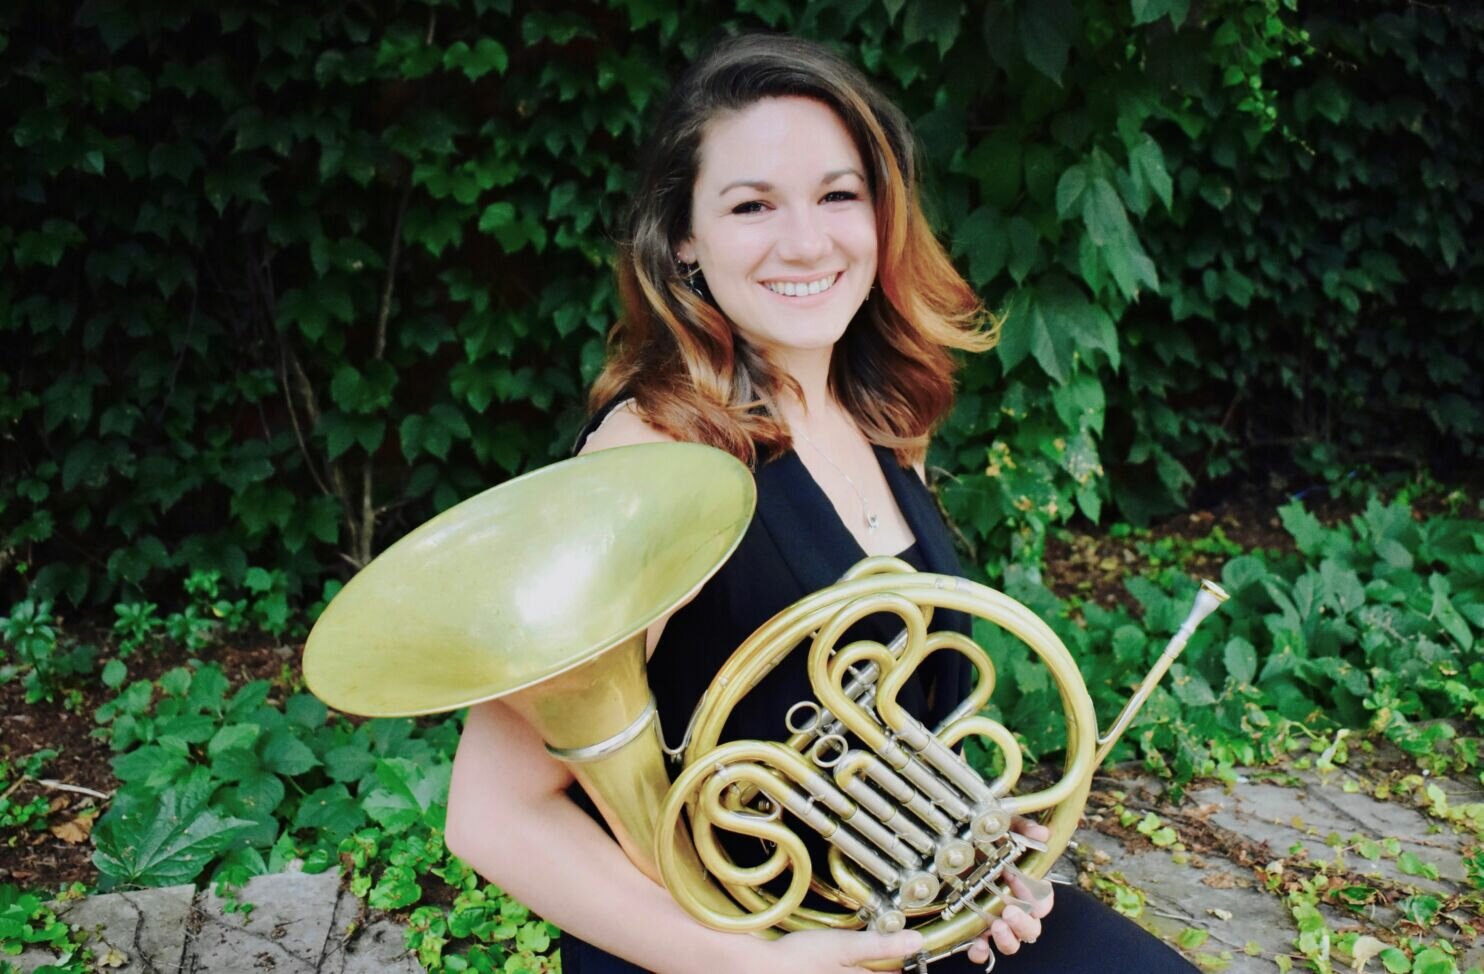 Horn player Valerie Sly